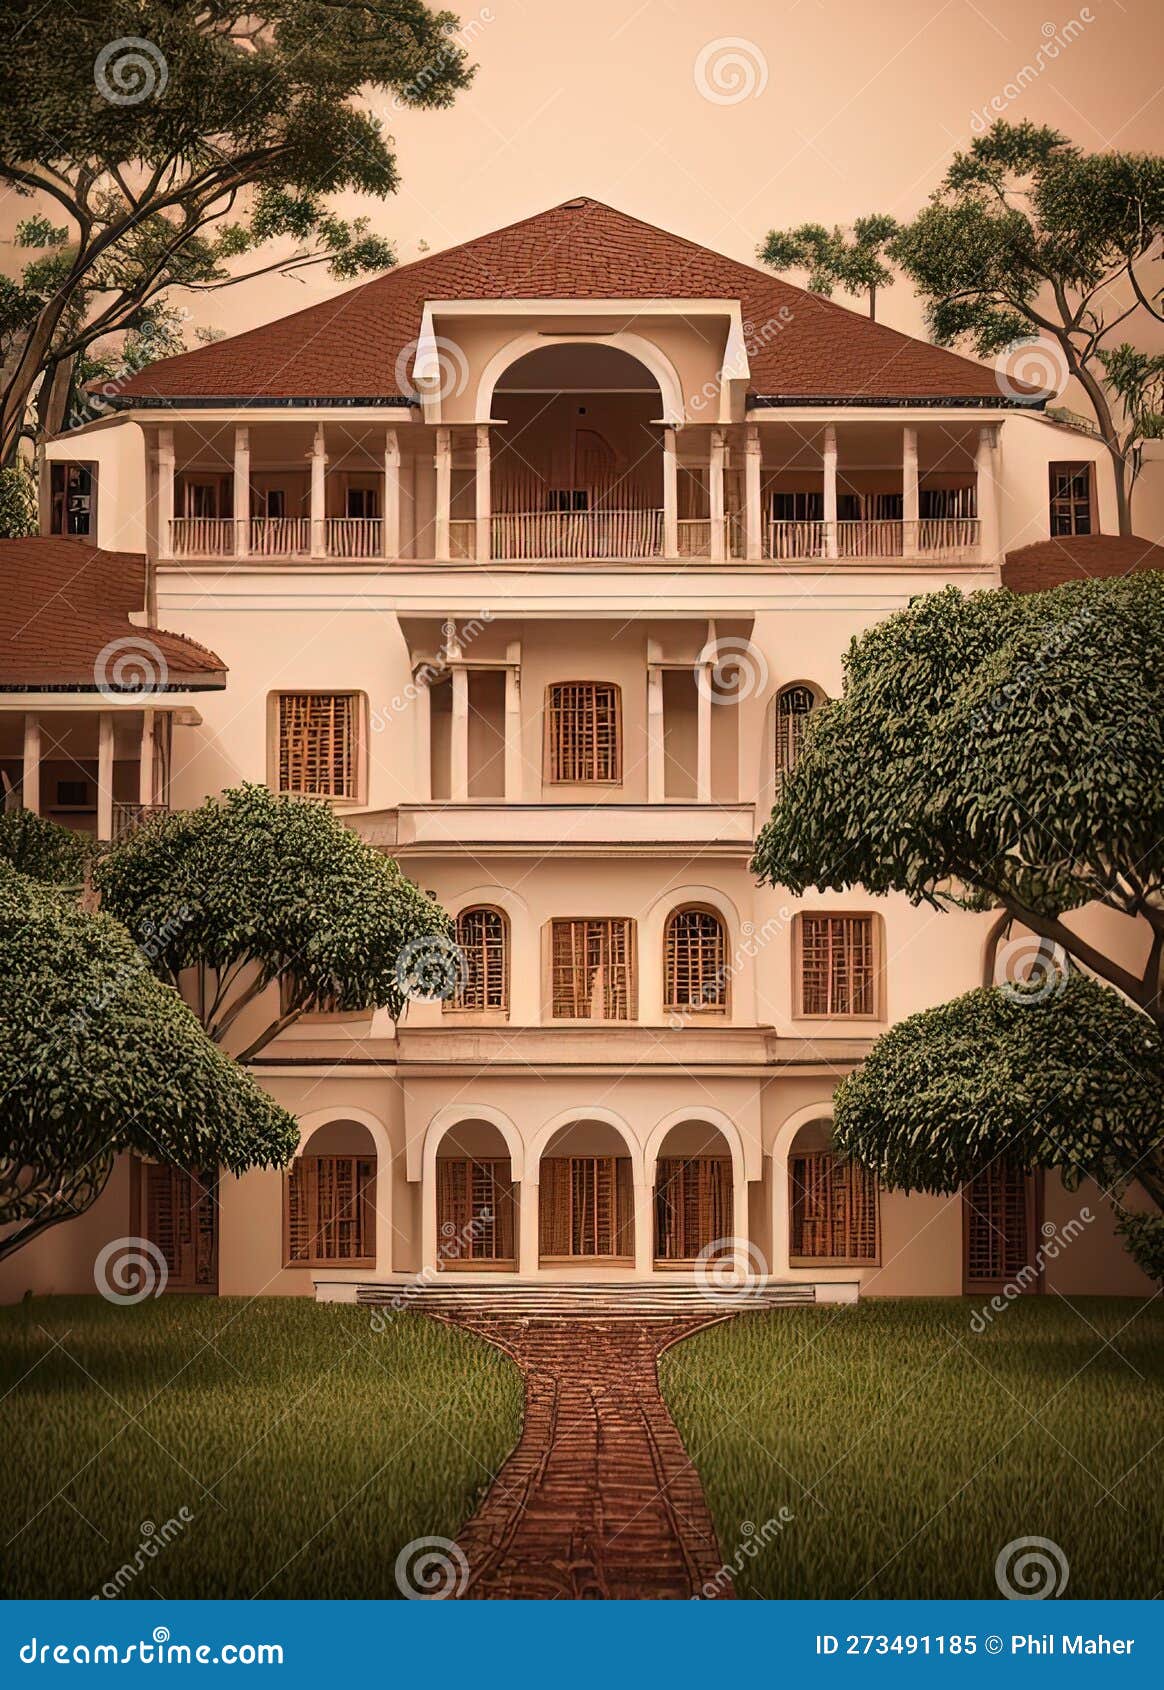 fictional mansion in bouake, vallÃ©e du bandama, cÃ´te d'ivoire.